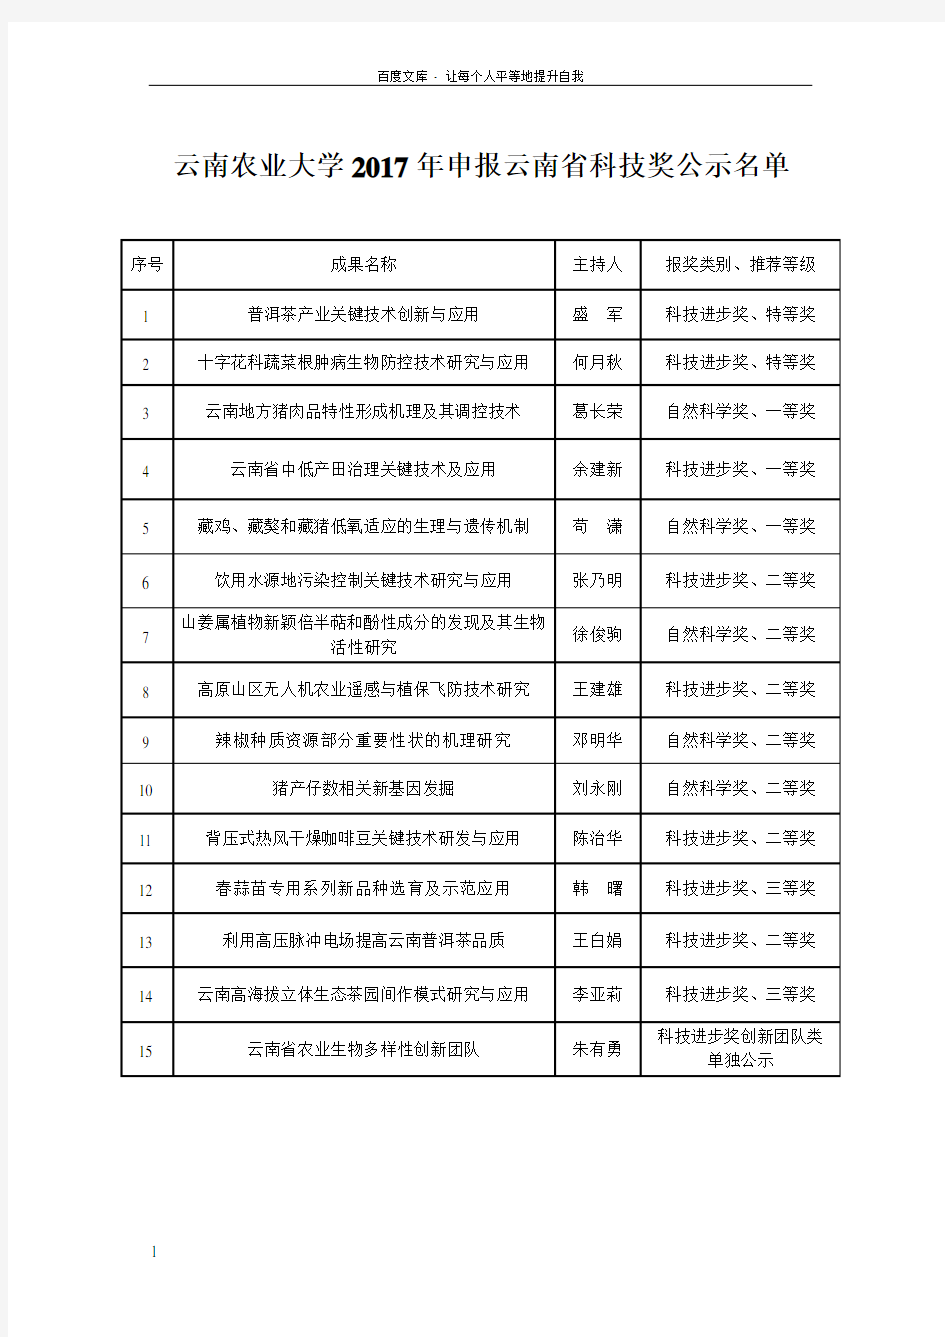 云南农业大学2017年申报云南省科技奖公示名单